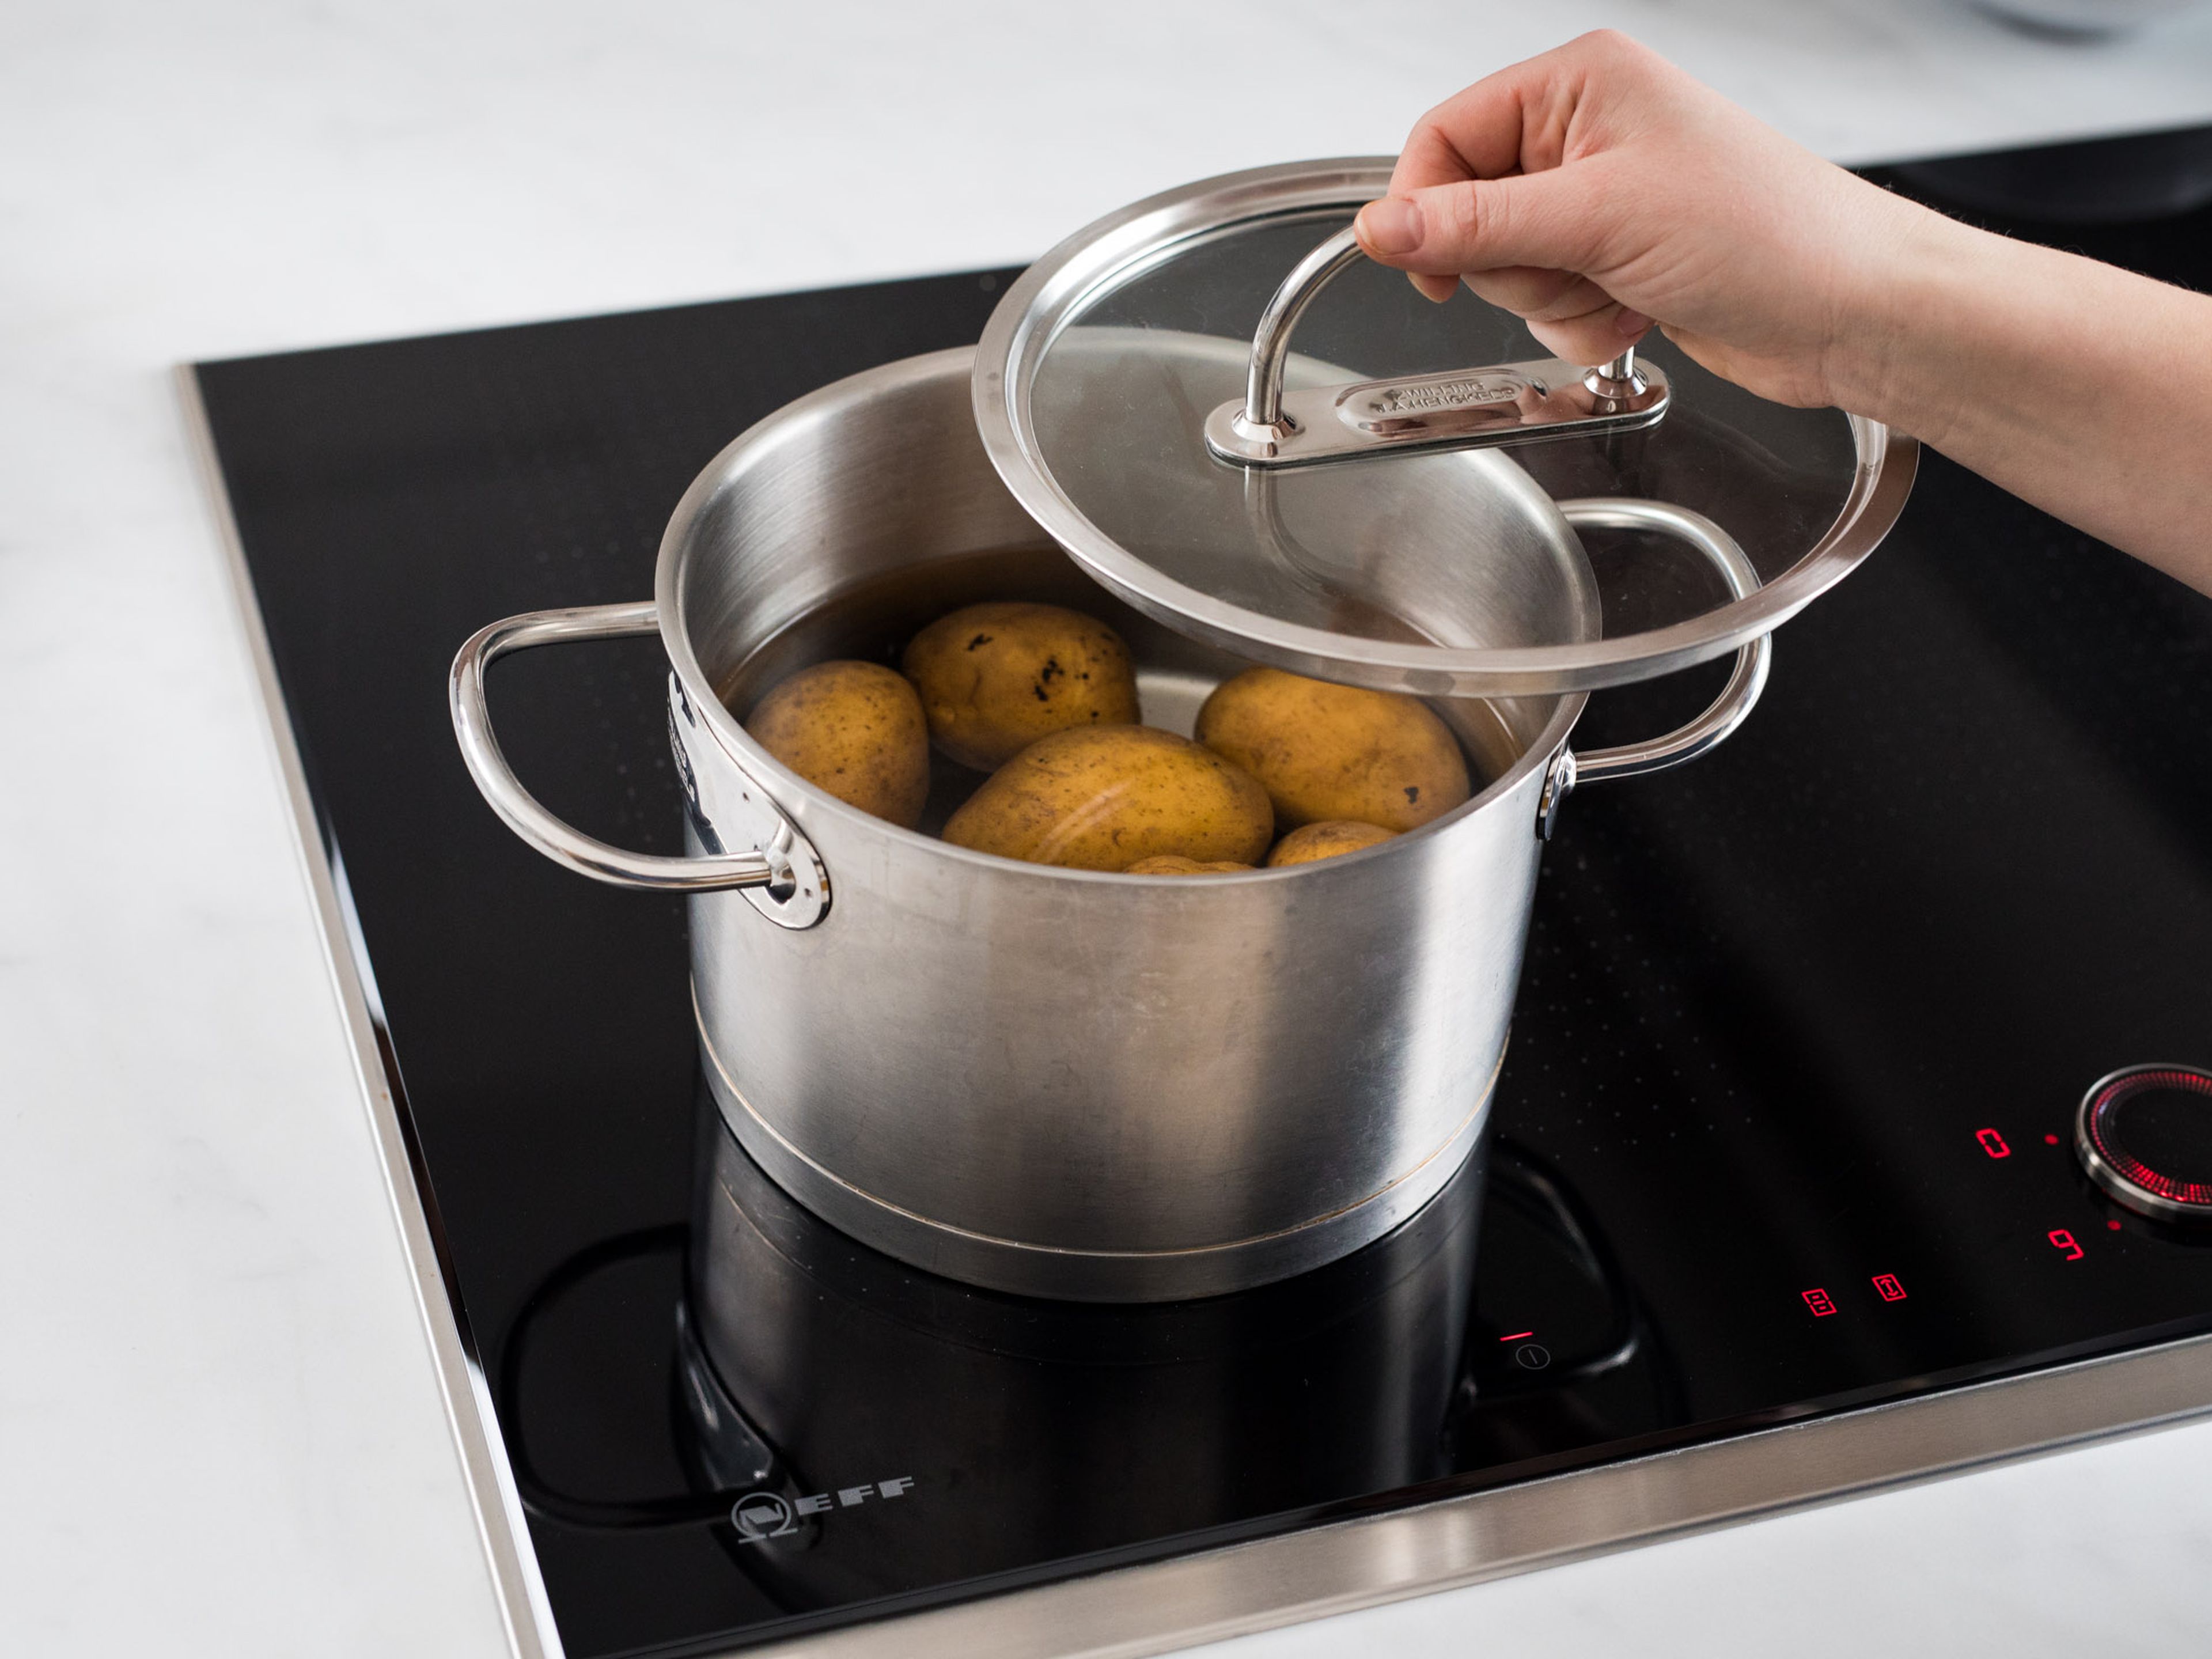 Kartoffeln in einen Topf geben, mit Wasser bedecken und salzen. Ca. 20 Min. kochen, oder bis sie weich. aber noch bissfest sind. Anschließend unter kaltem Wasser abspülen, schälen und längs halbieren.